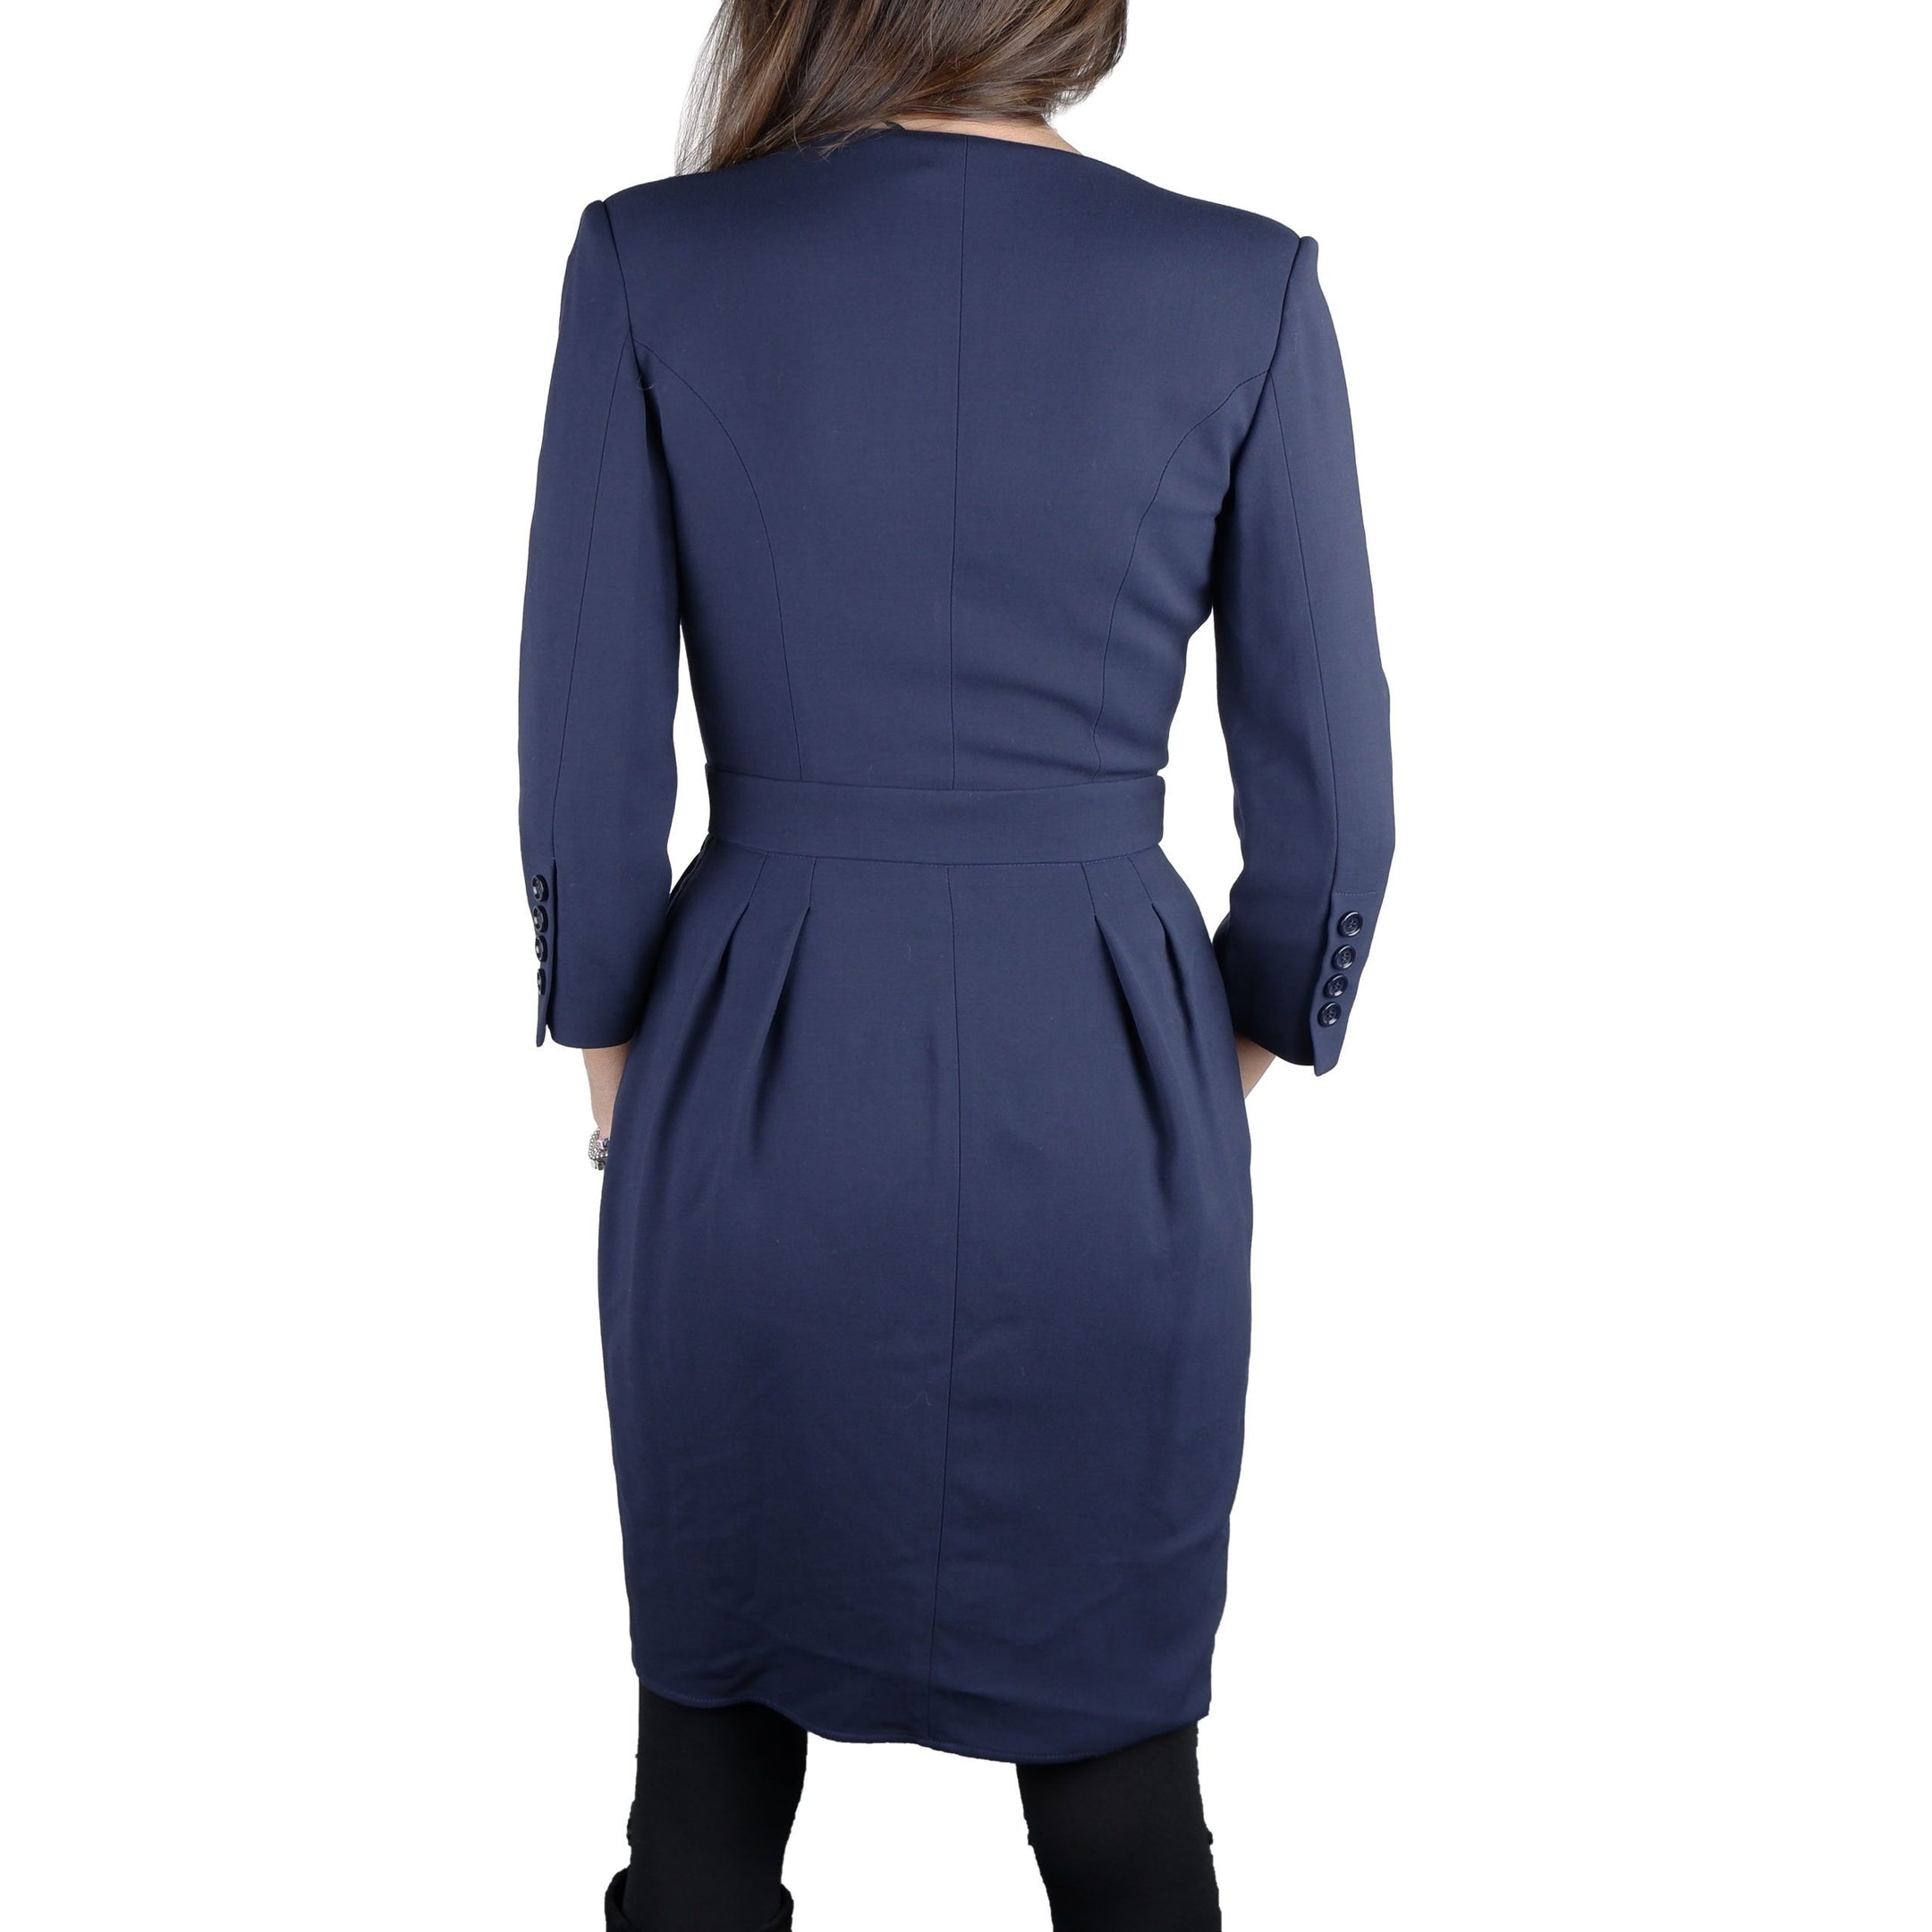 Elegant Blue V-Neck Dress with Belt